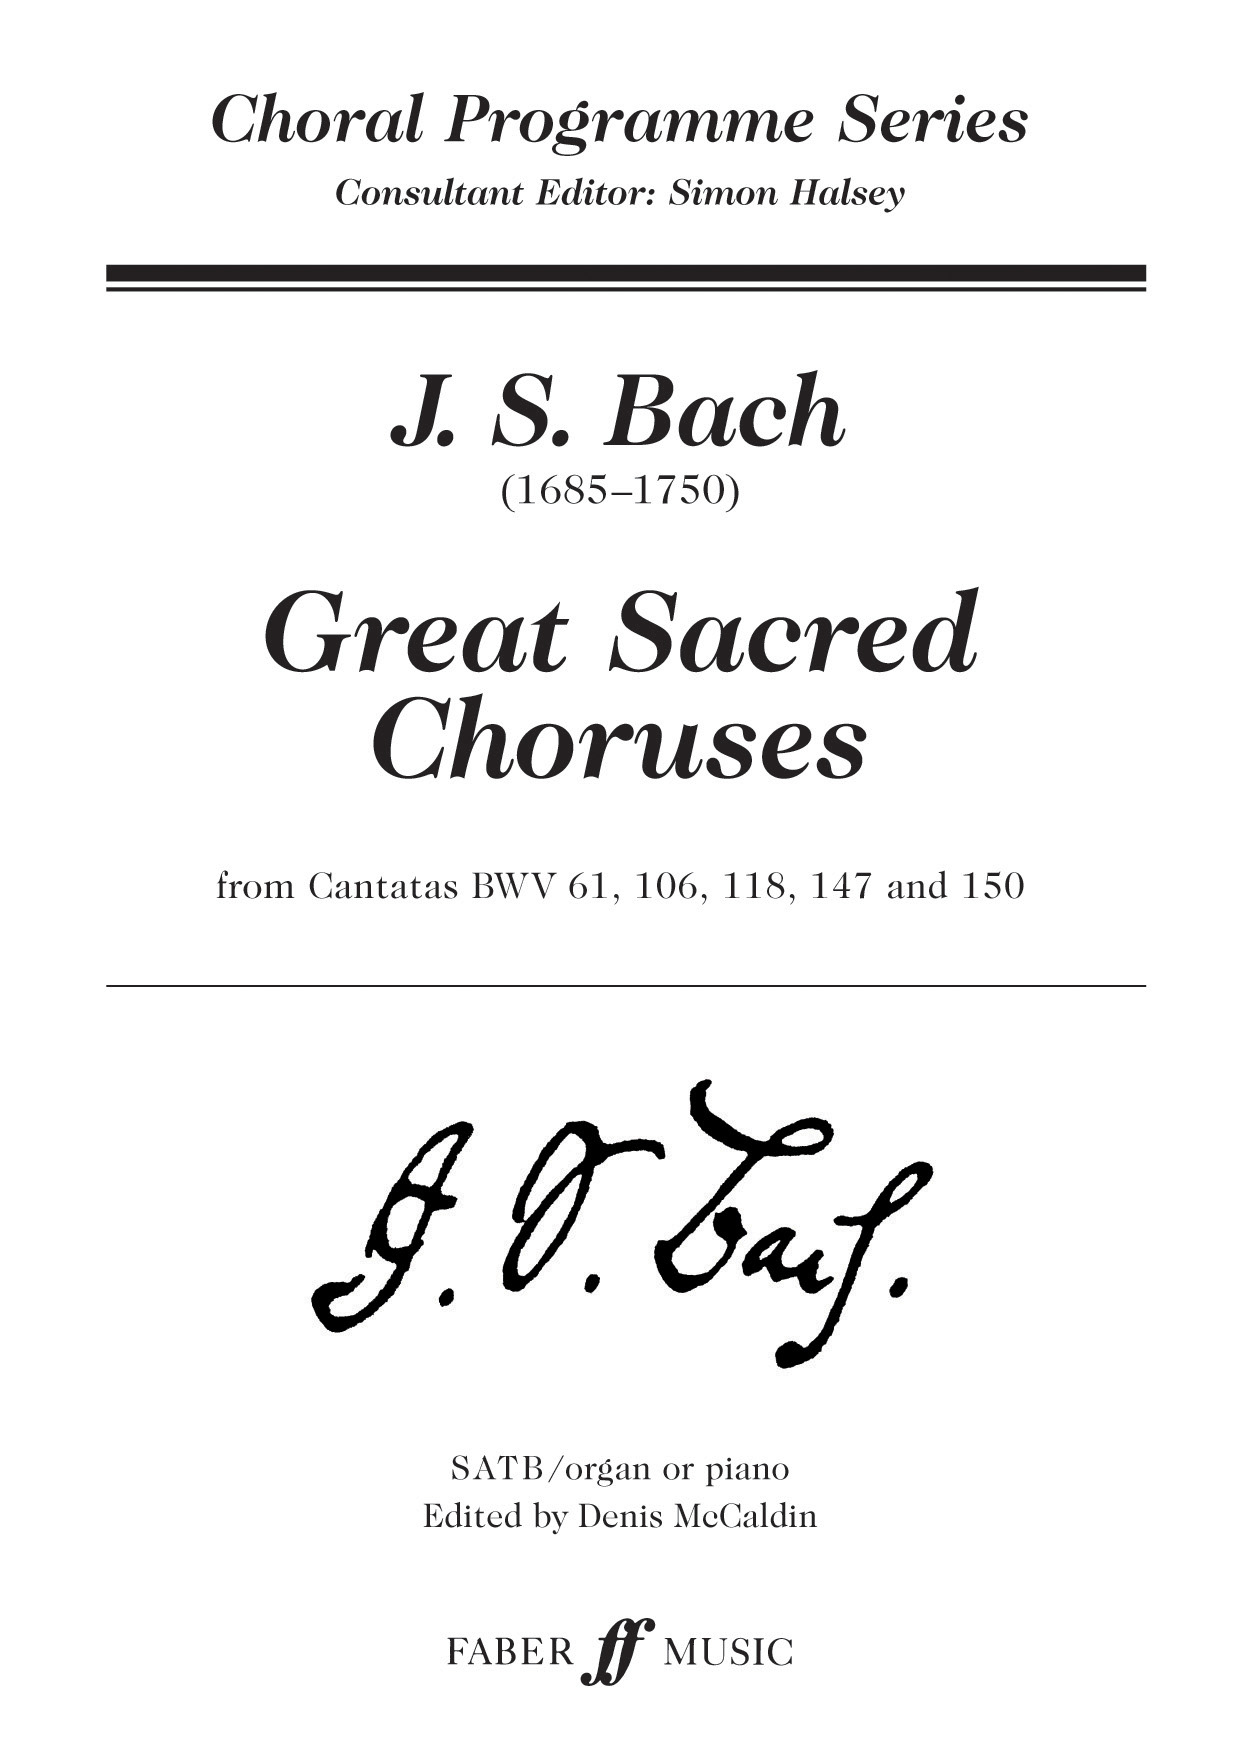 Great Sacred Choruses (BACH JOHANN SEBASTIAN)